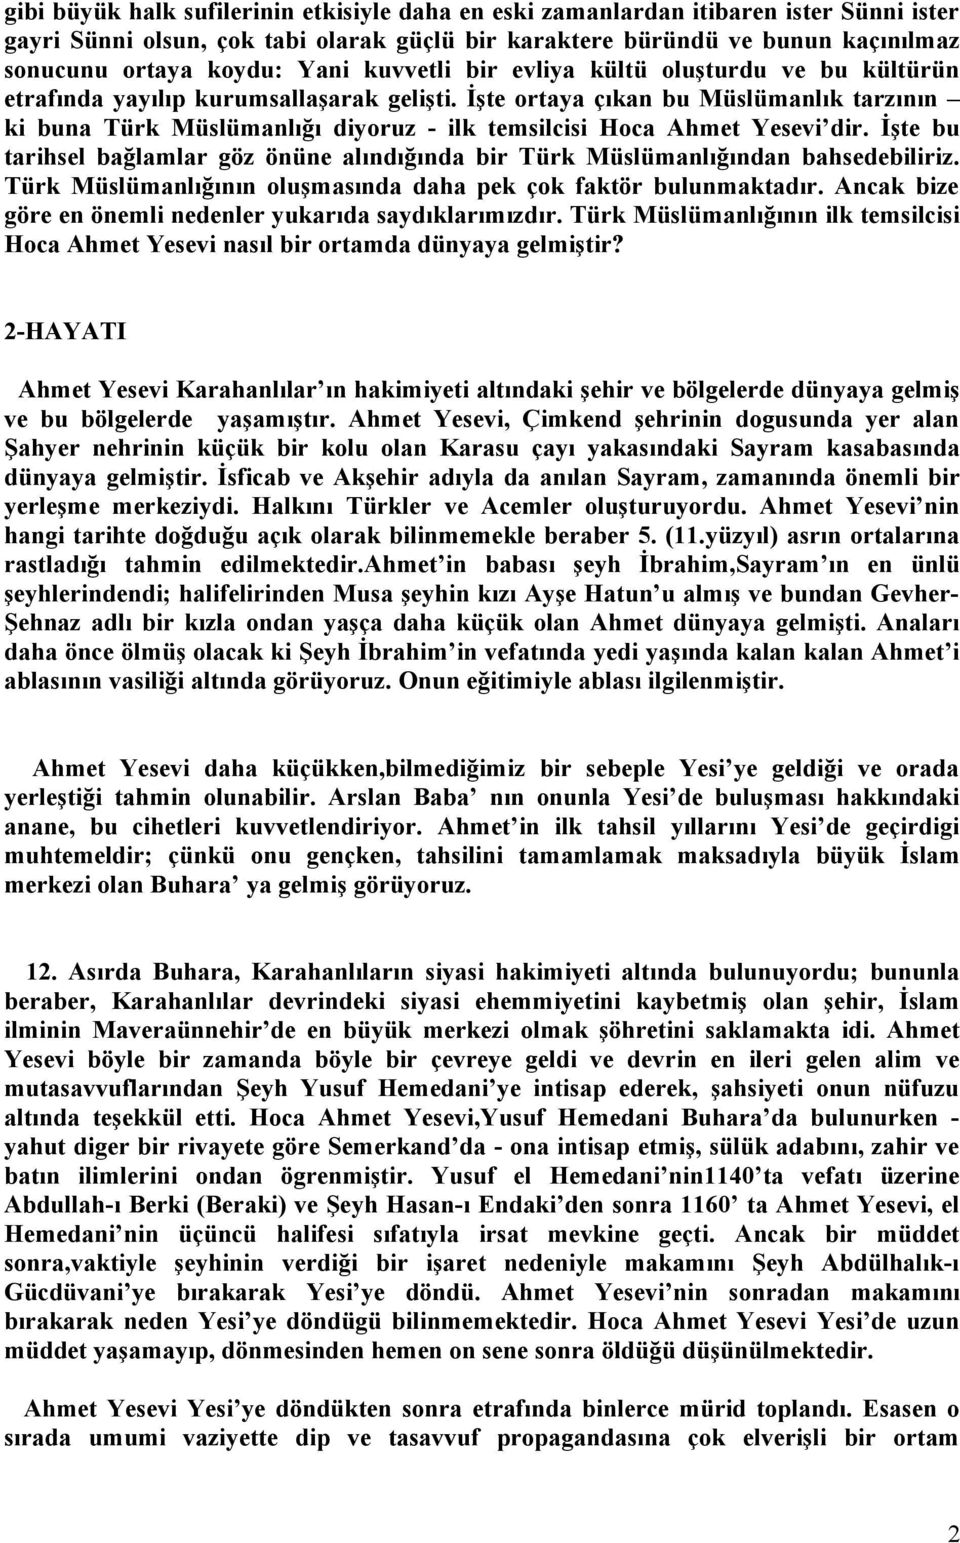 İşte ortaya çıkan bu Müslümanlık tarzının ki buna Türk Müslümanlığı diyoruz - ilk temsilcisi Hoca Ahmet Yesevi dir.